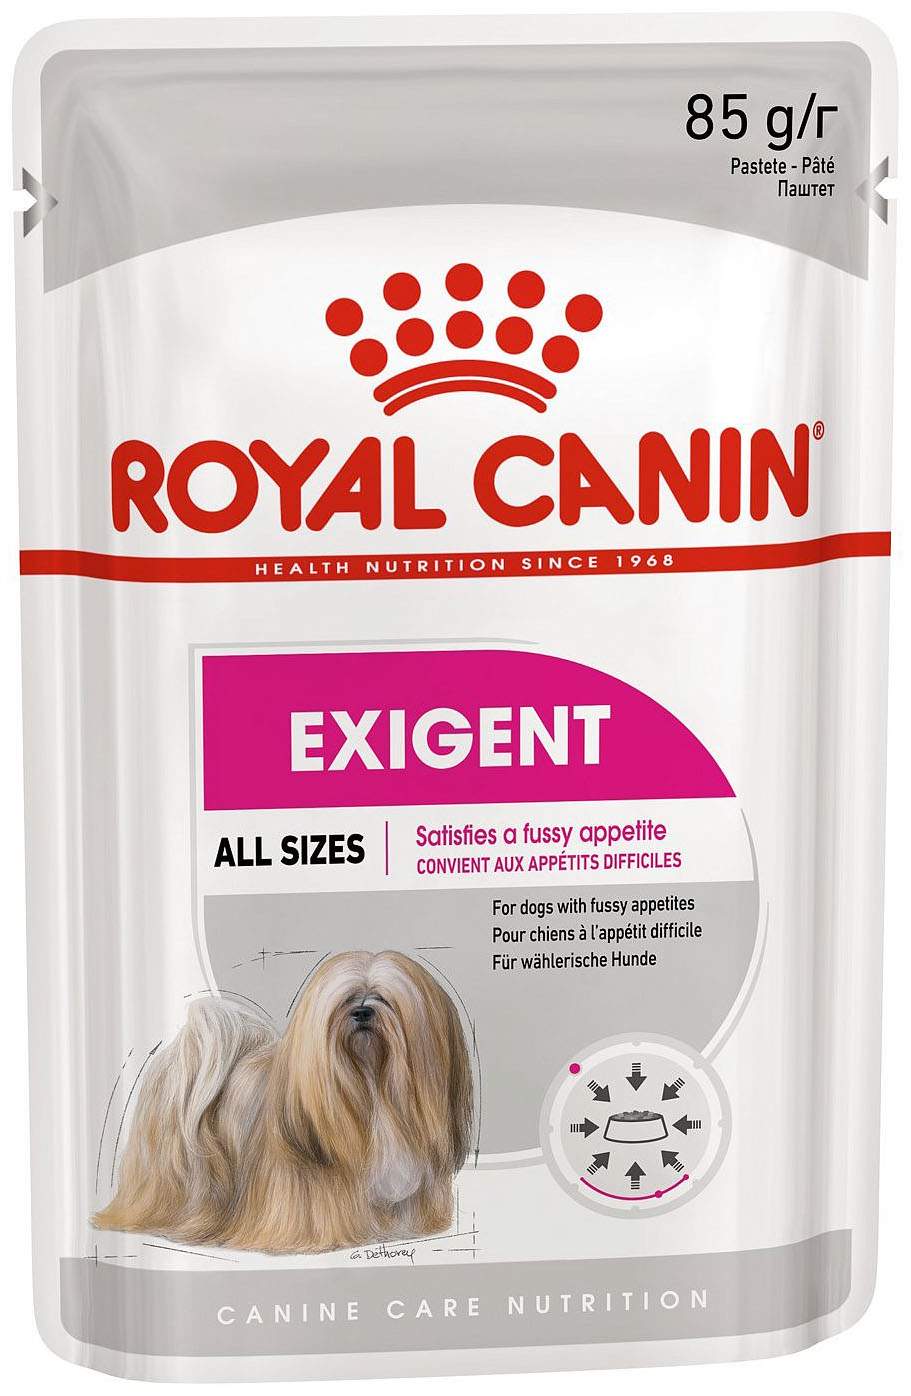 Exigent Pouch Loaf влажный корм для собак привиредливых в питании, Royal Canin